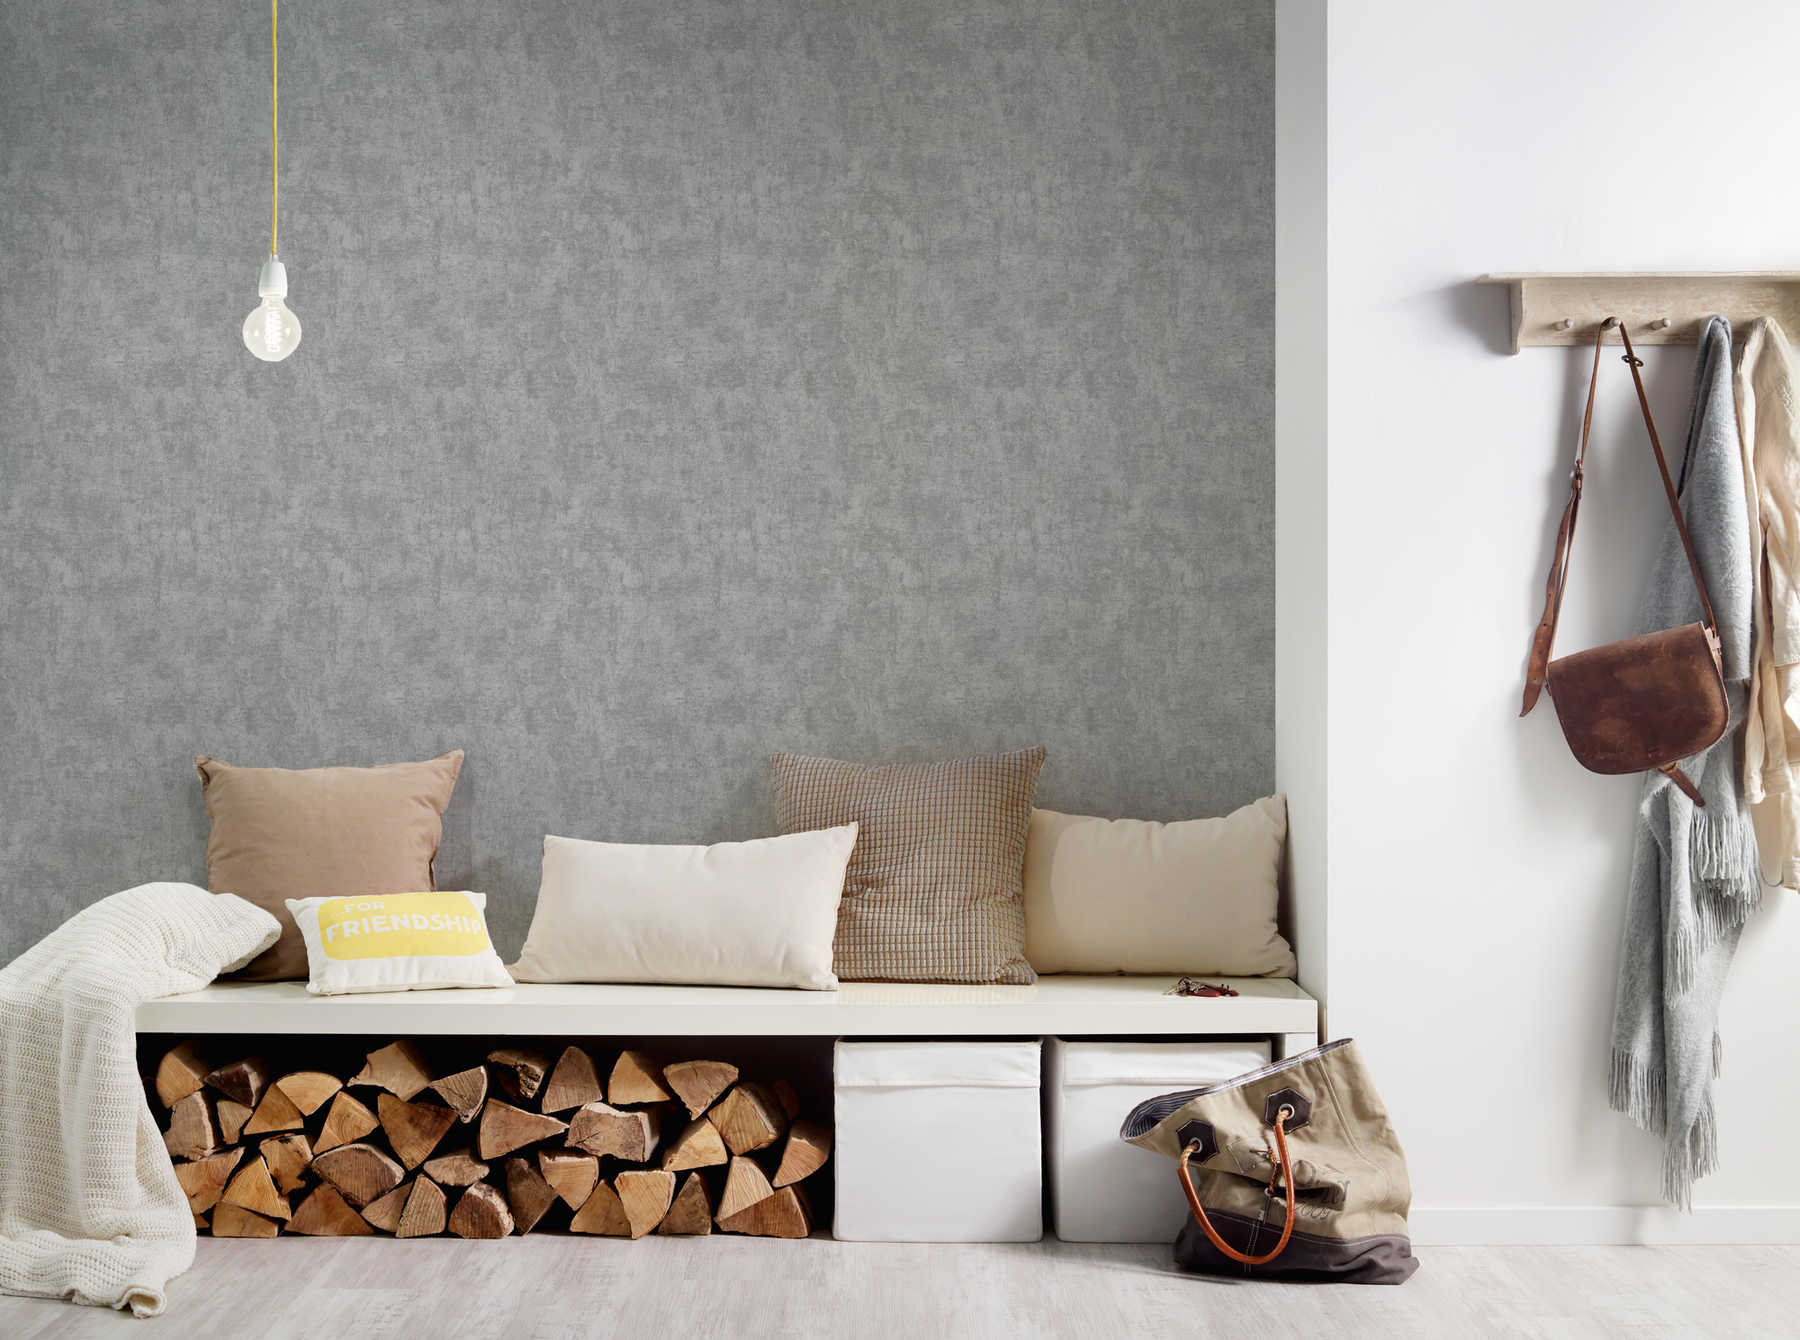             Dark non-woven wallpaper with concrete look - grey
        